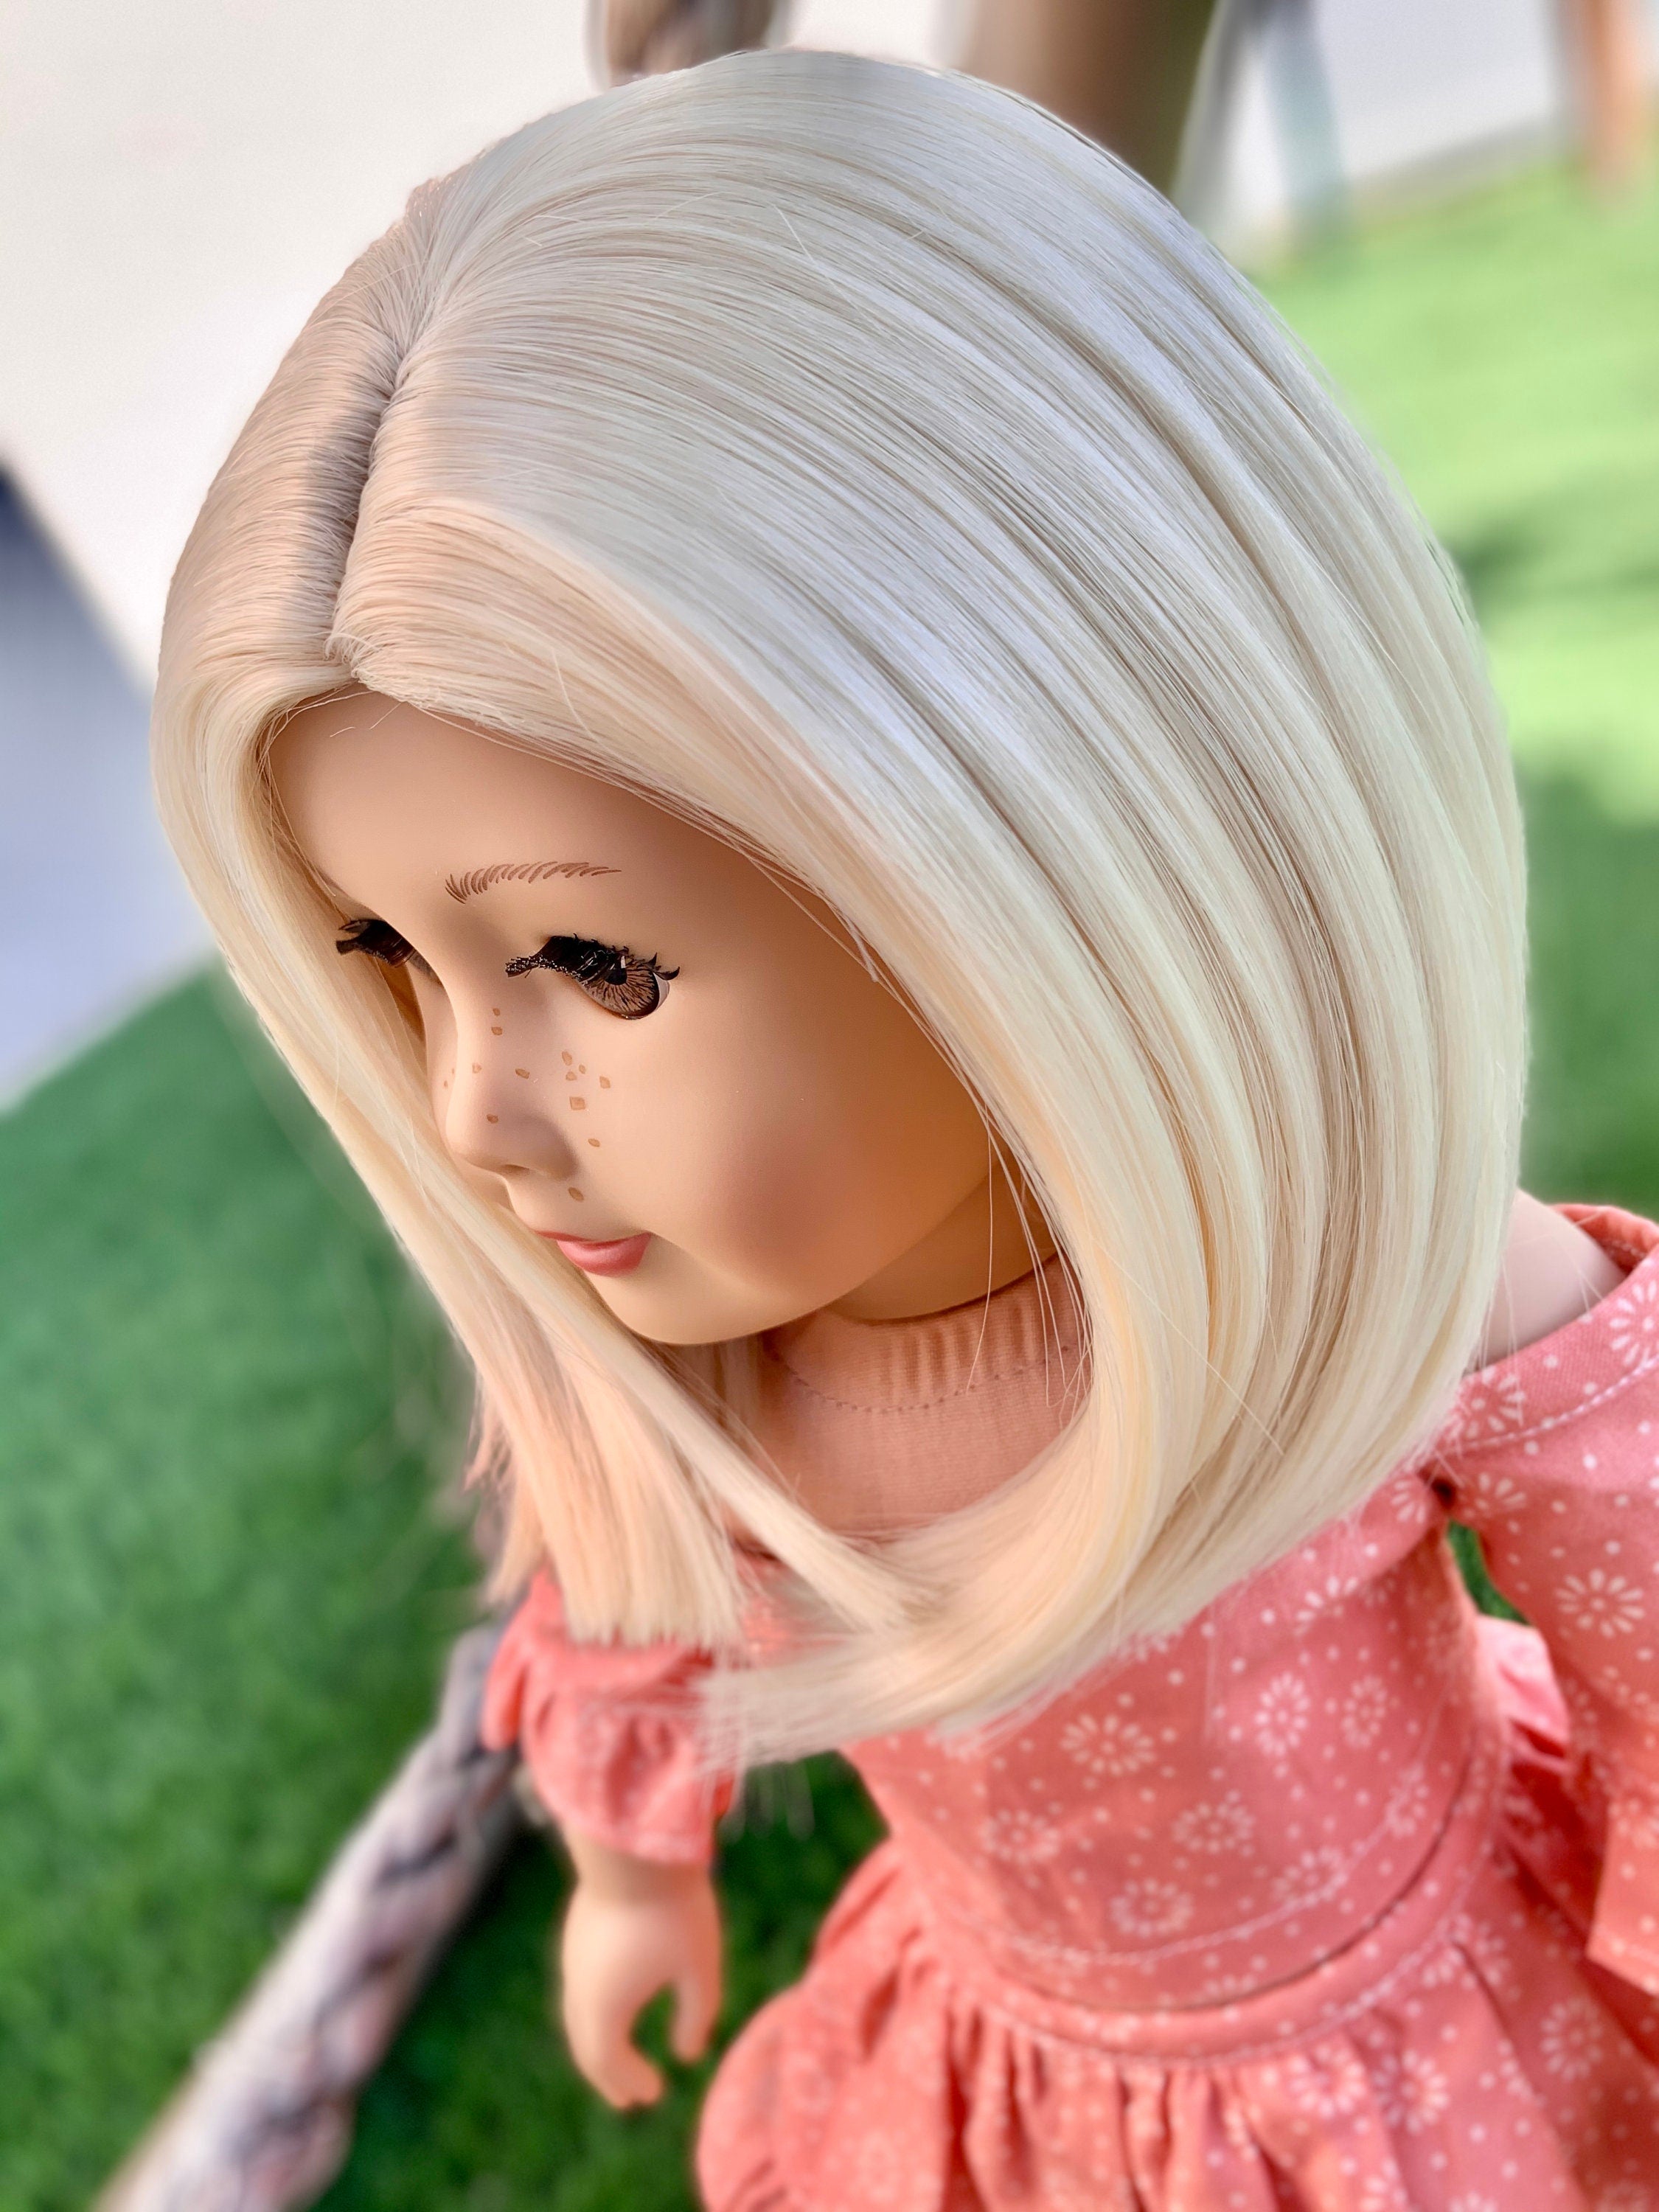 Custom doll wig for 18" American Girl Dolls - Heat Safe - Tangle Resistant -fits 10-11" head size of 18" dolls OG Blythe BJD Gotz Blonde Bob